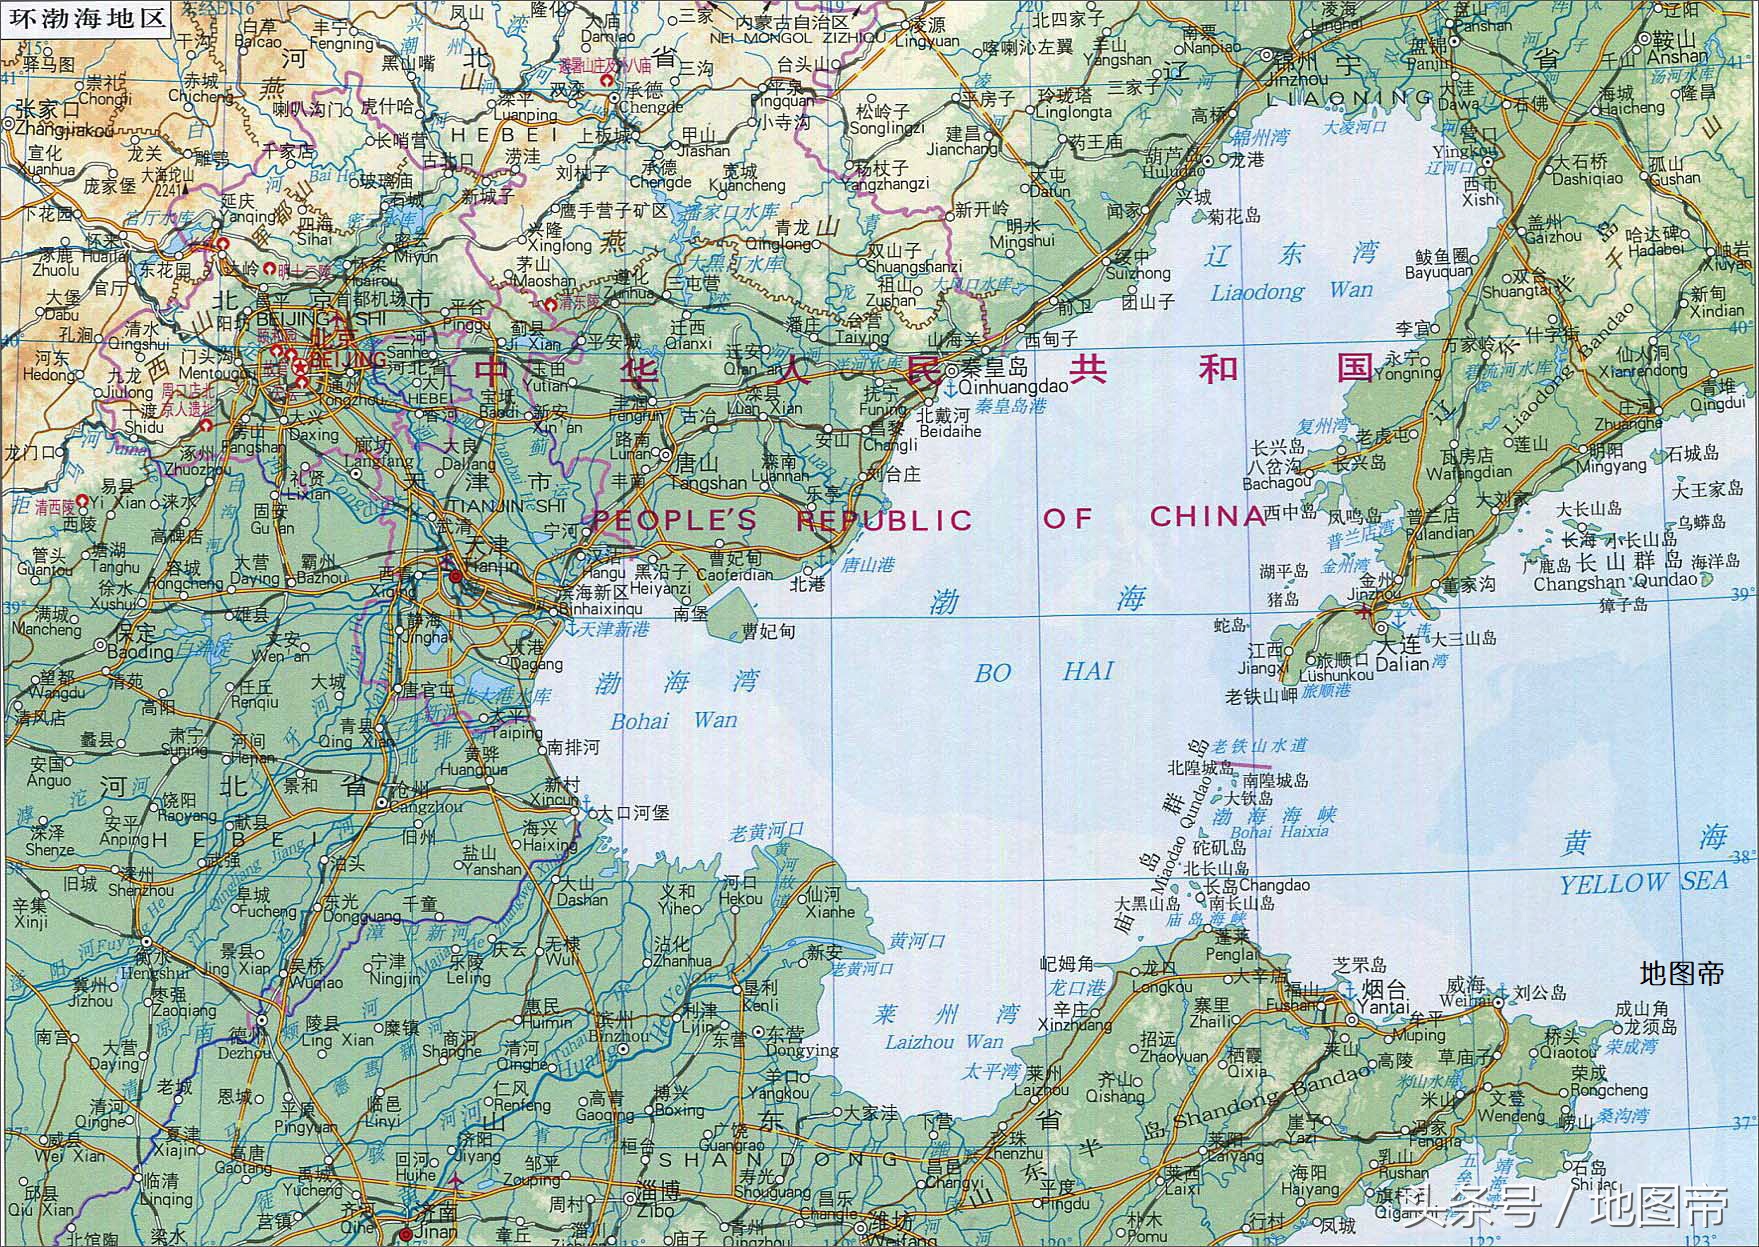 辽东半岛的老铁山与山东半岛北岸的蓬莱角间的连线即为渤海与黄海的分图片